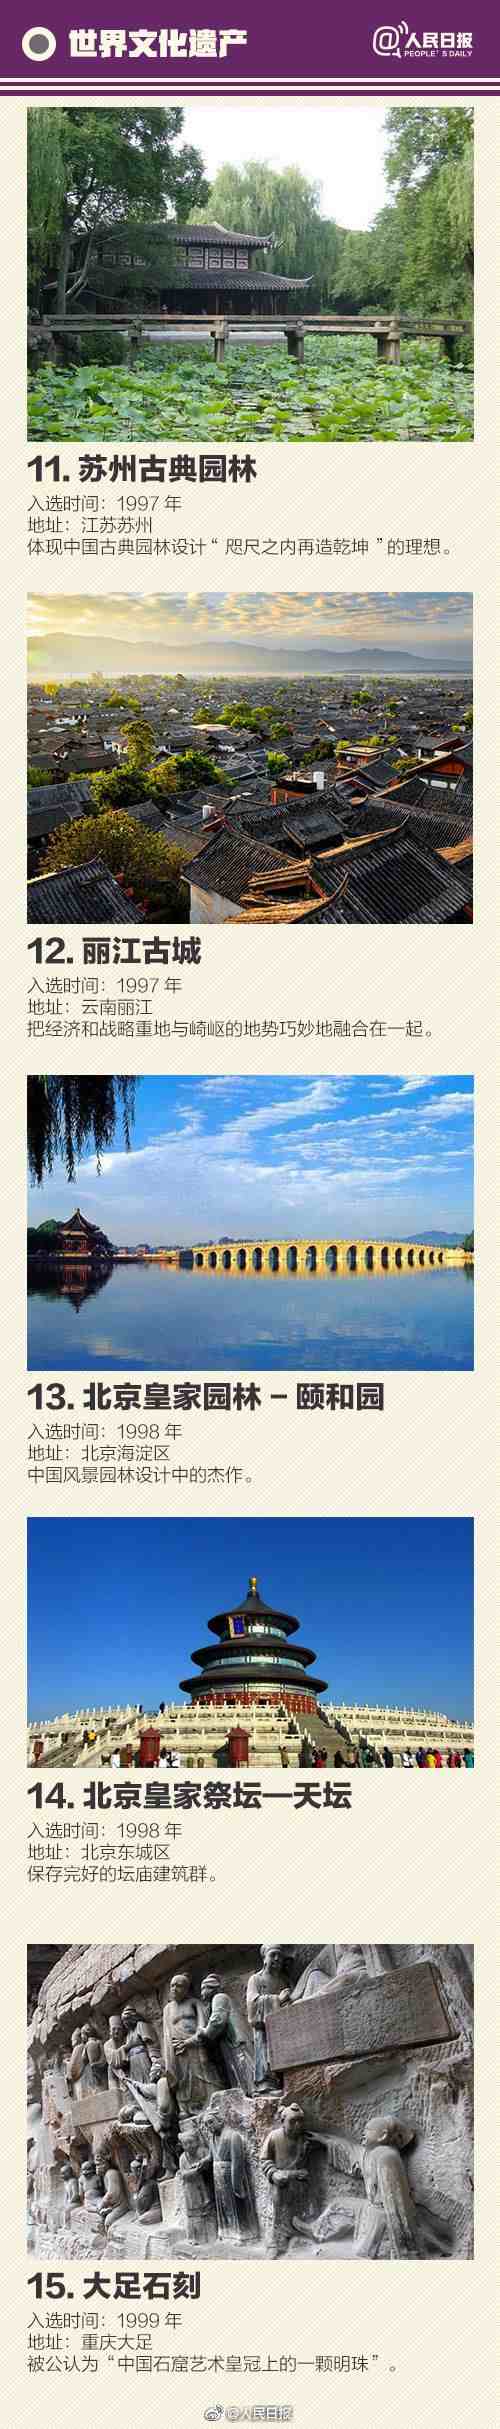 中国世界遗产名录|中国55个世界遗产名单一览大全